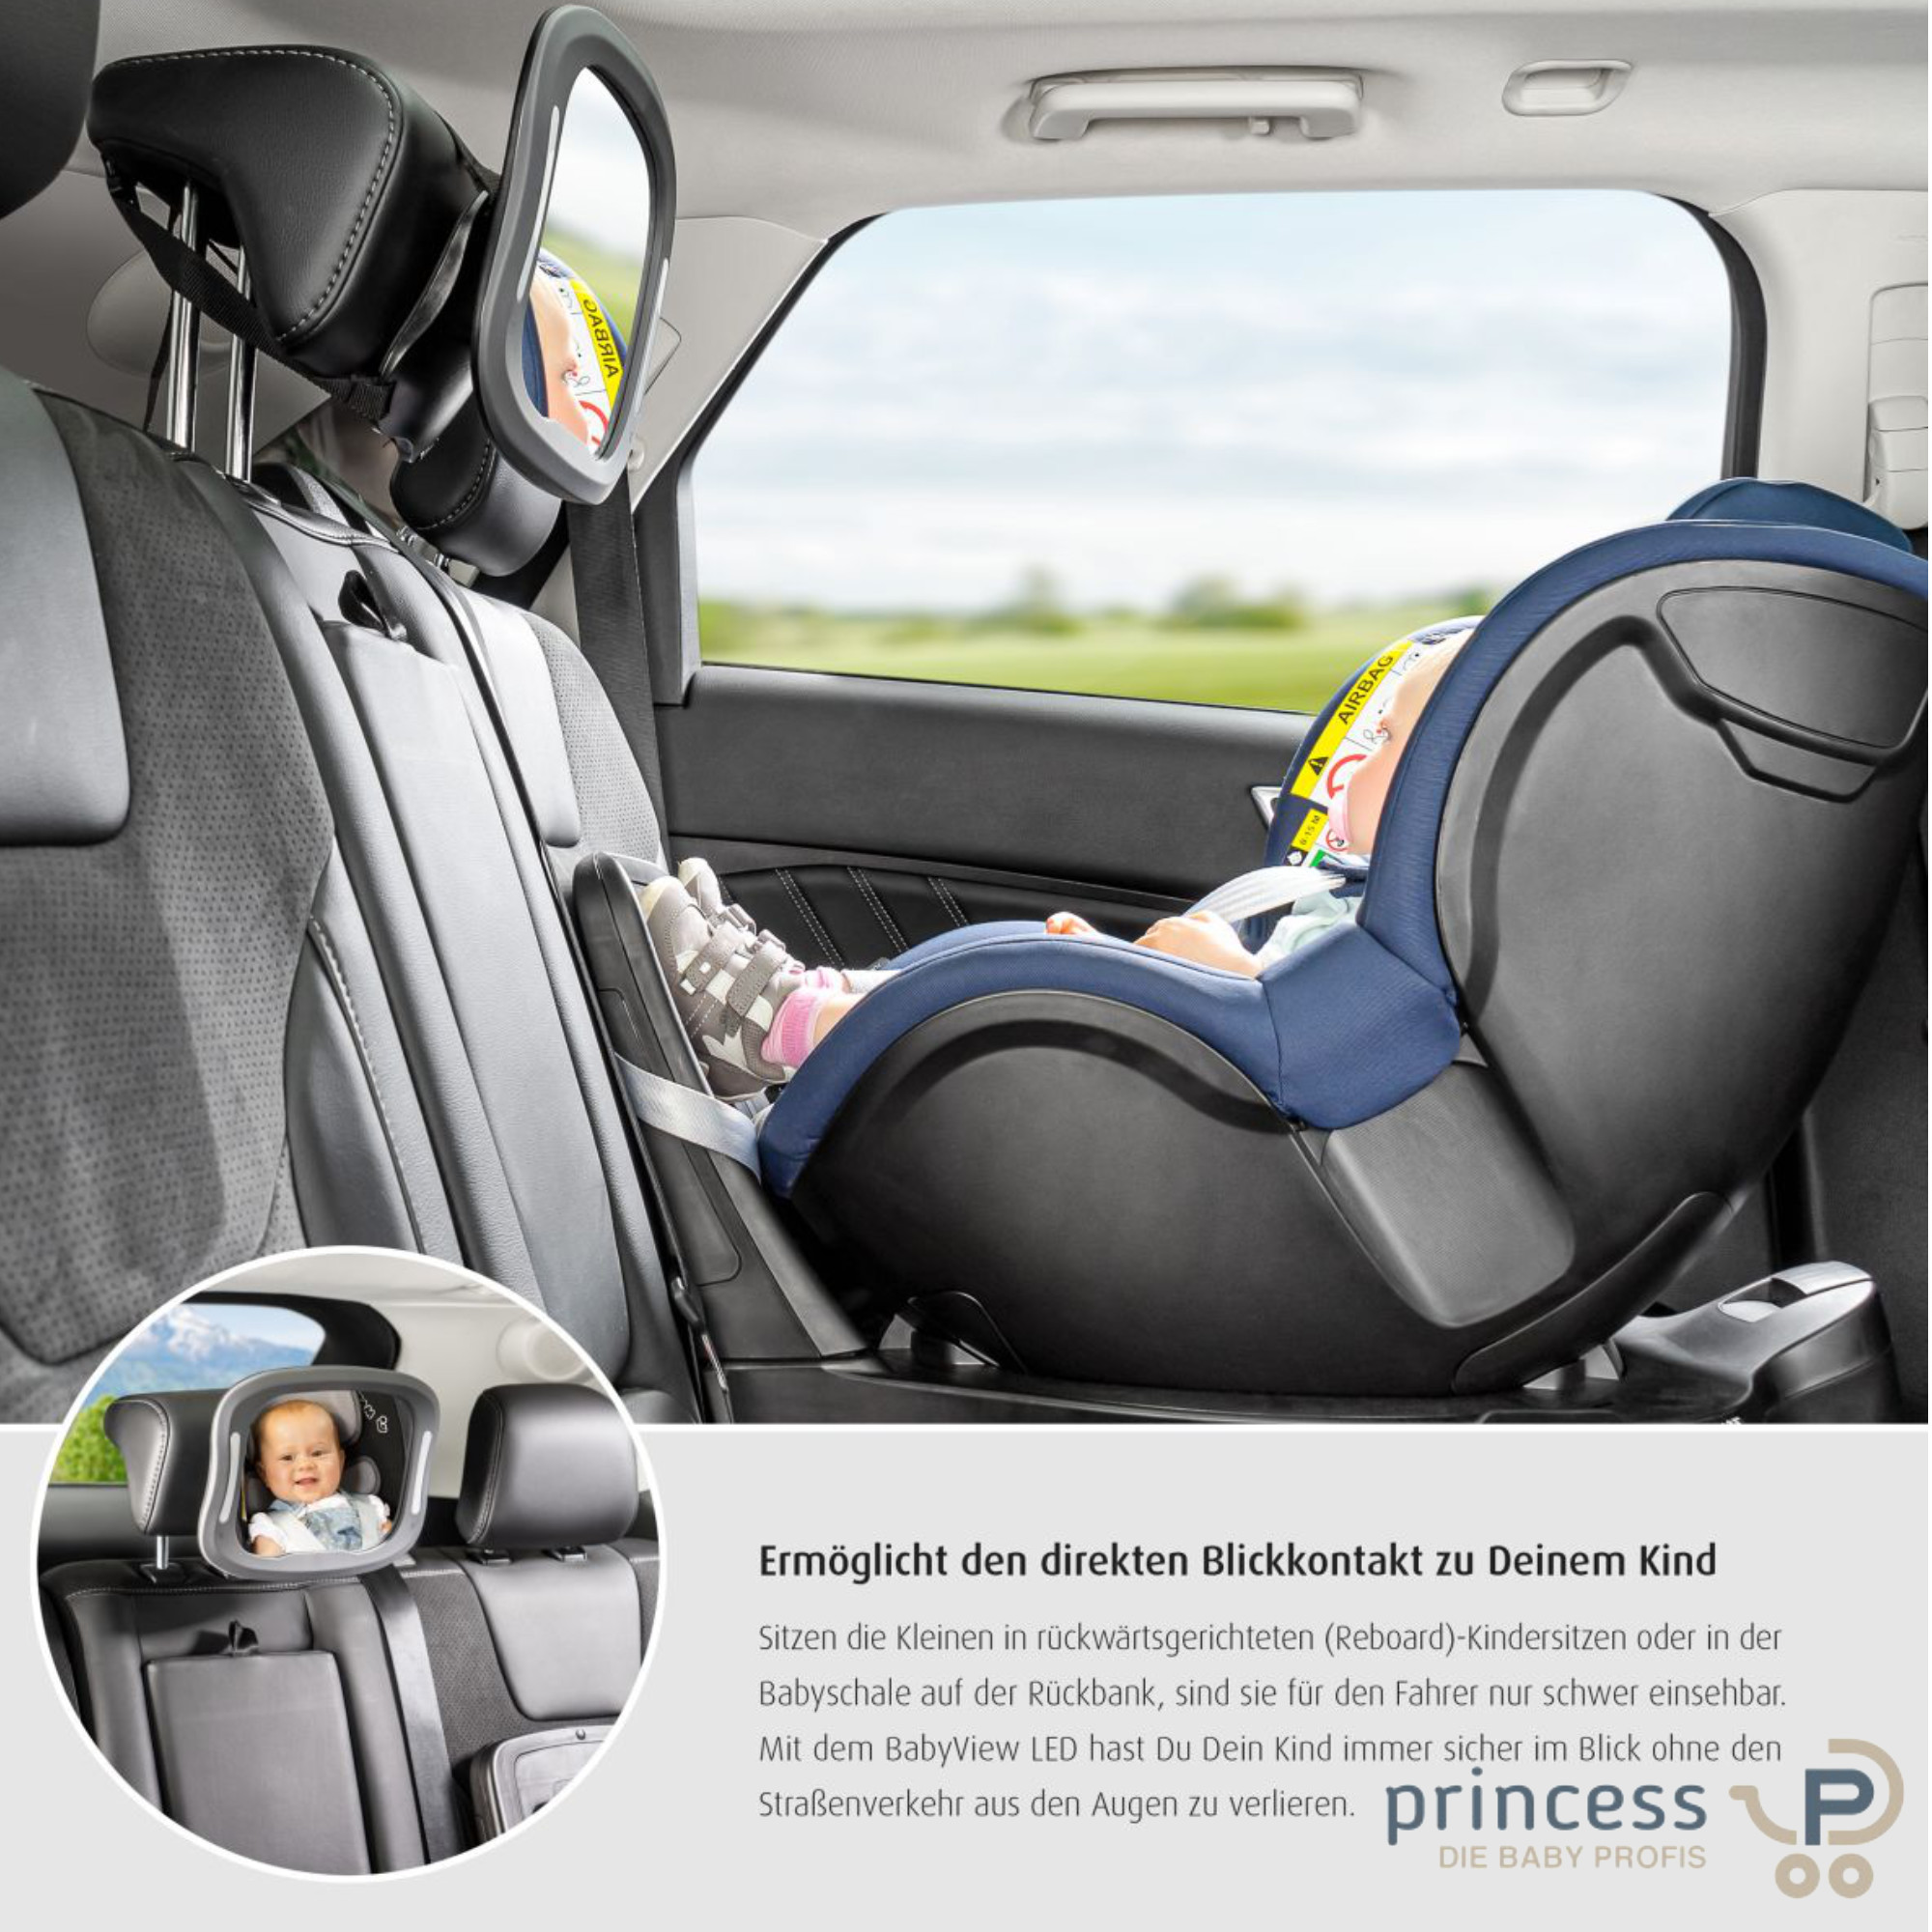 Renault-Kinderschutz: Kissen am Hals - DER SPIEGEL